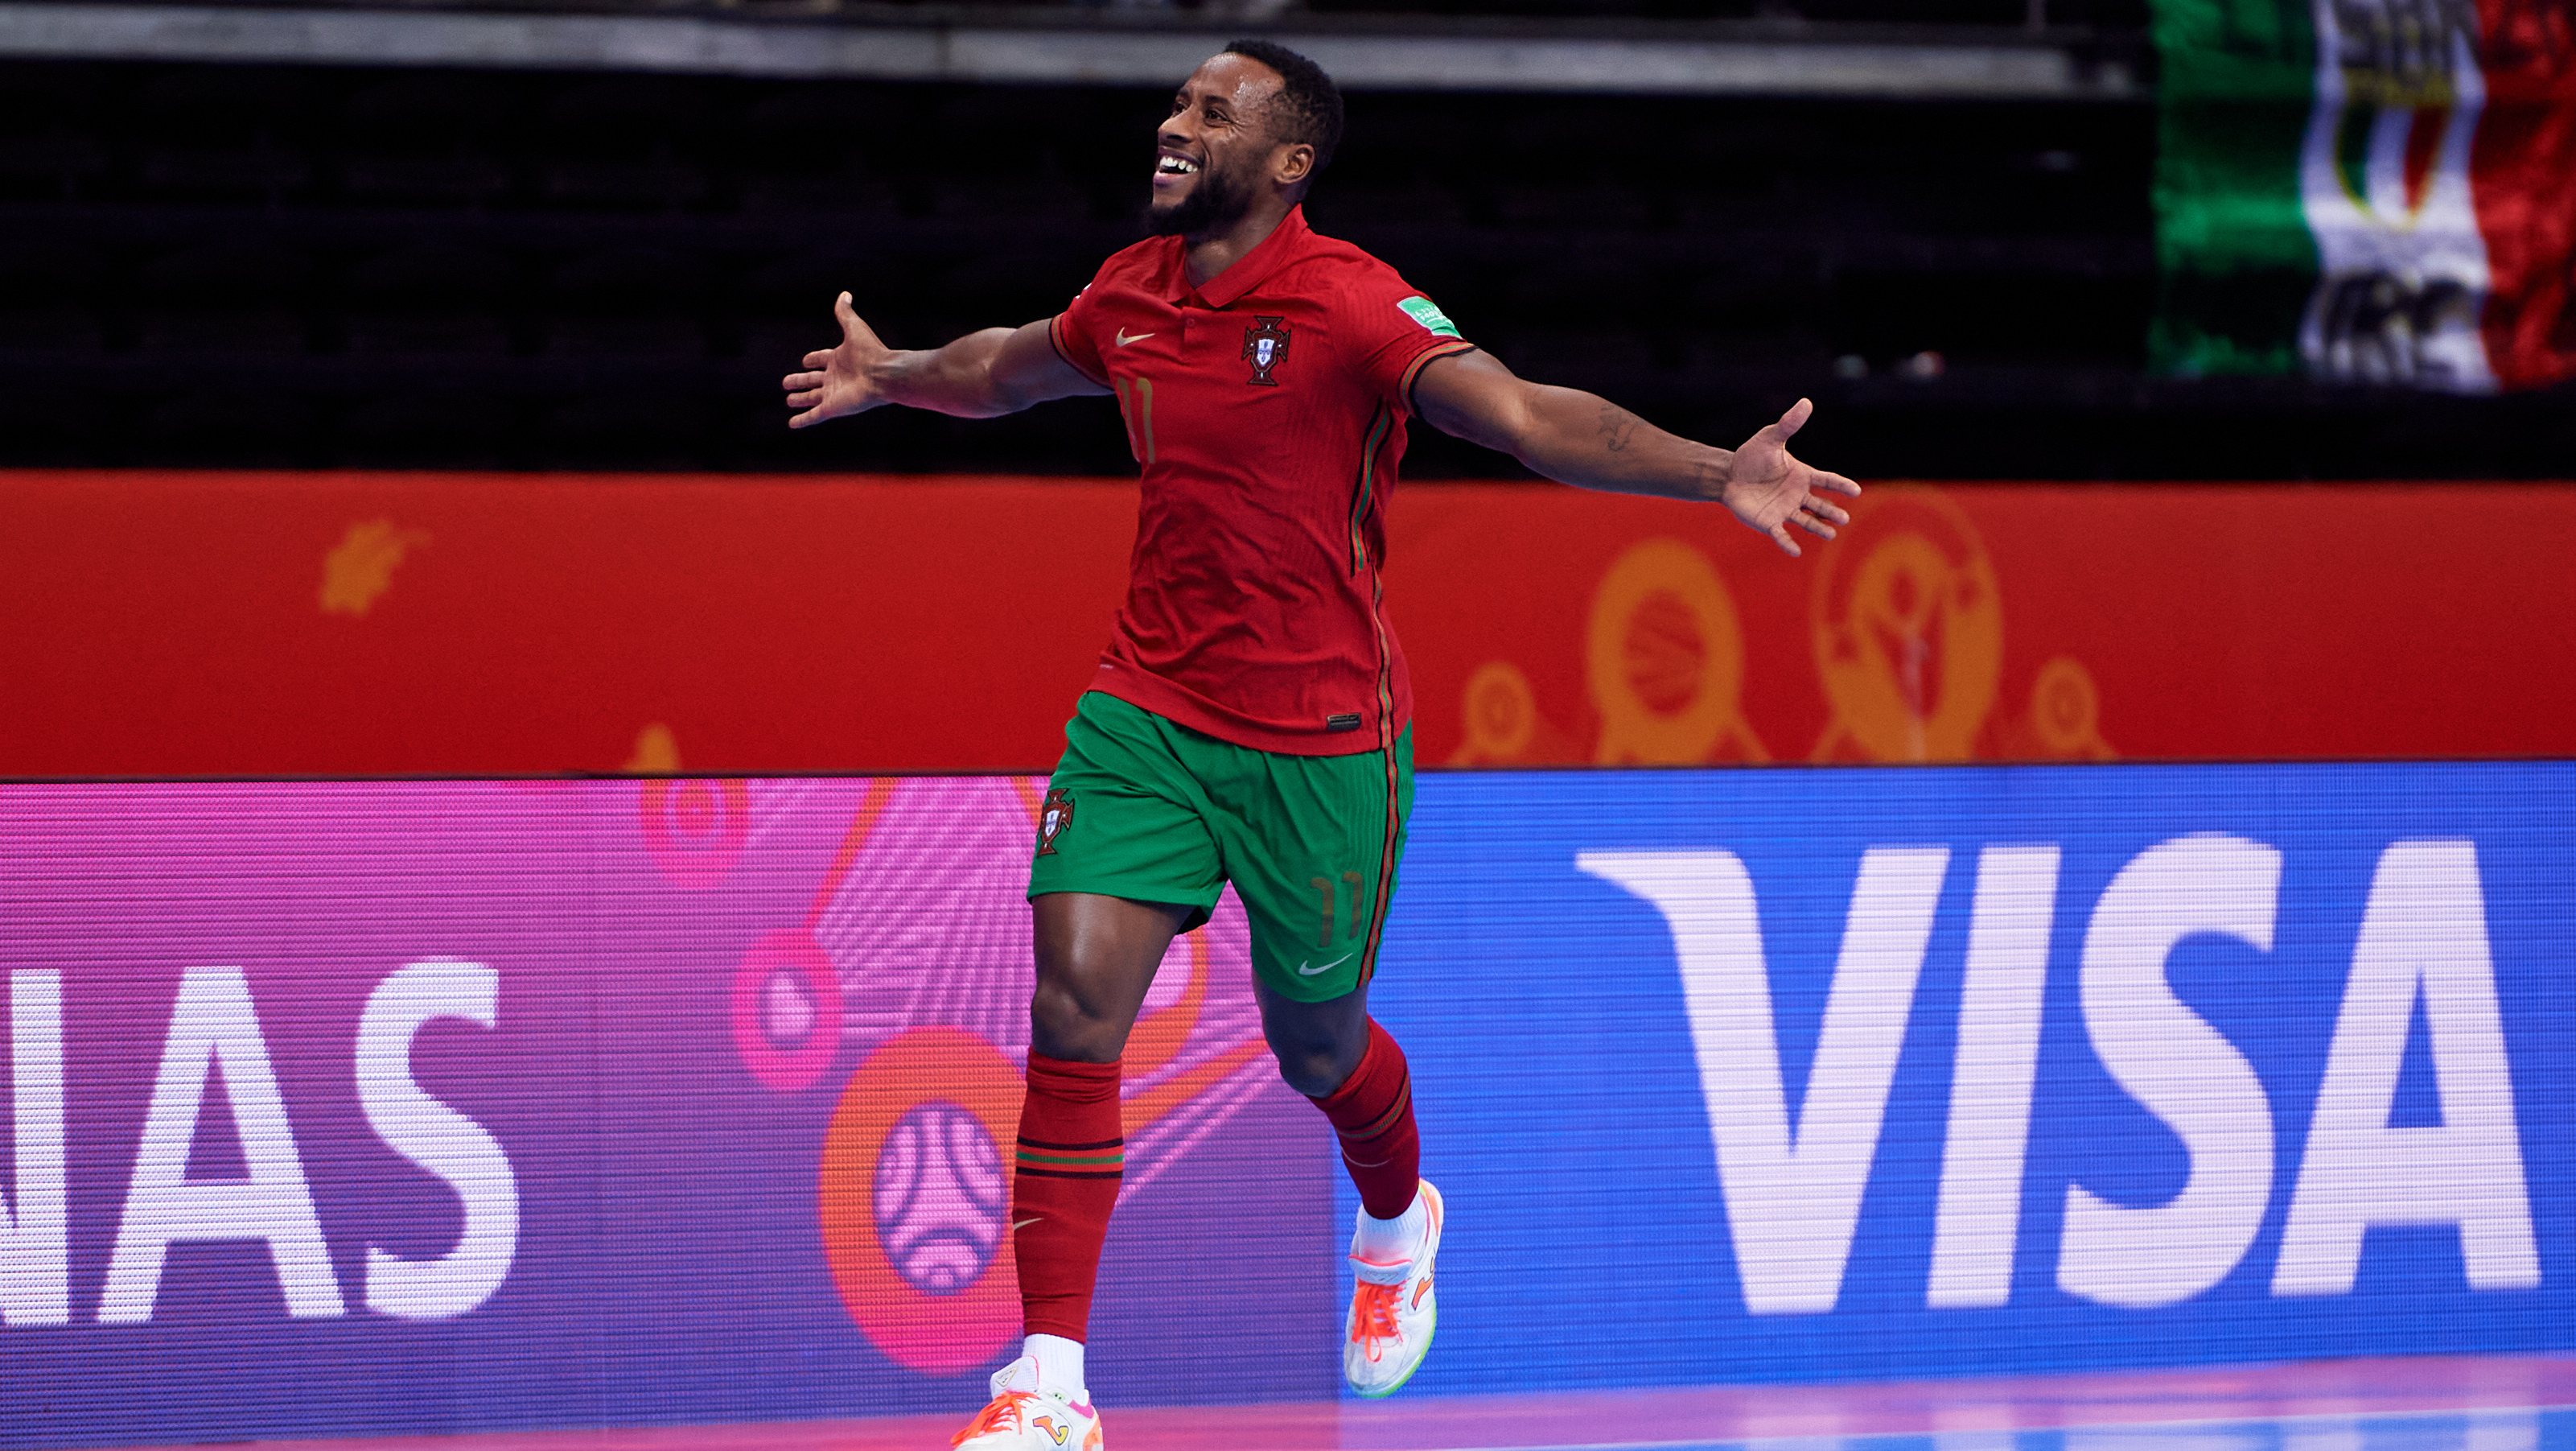 O mundo de futsal pintado a verde e vermelho: Sporting, Portugal e